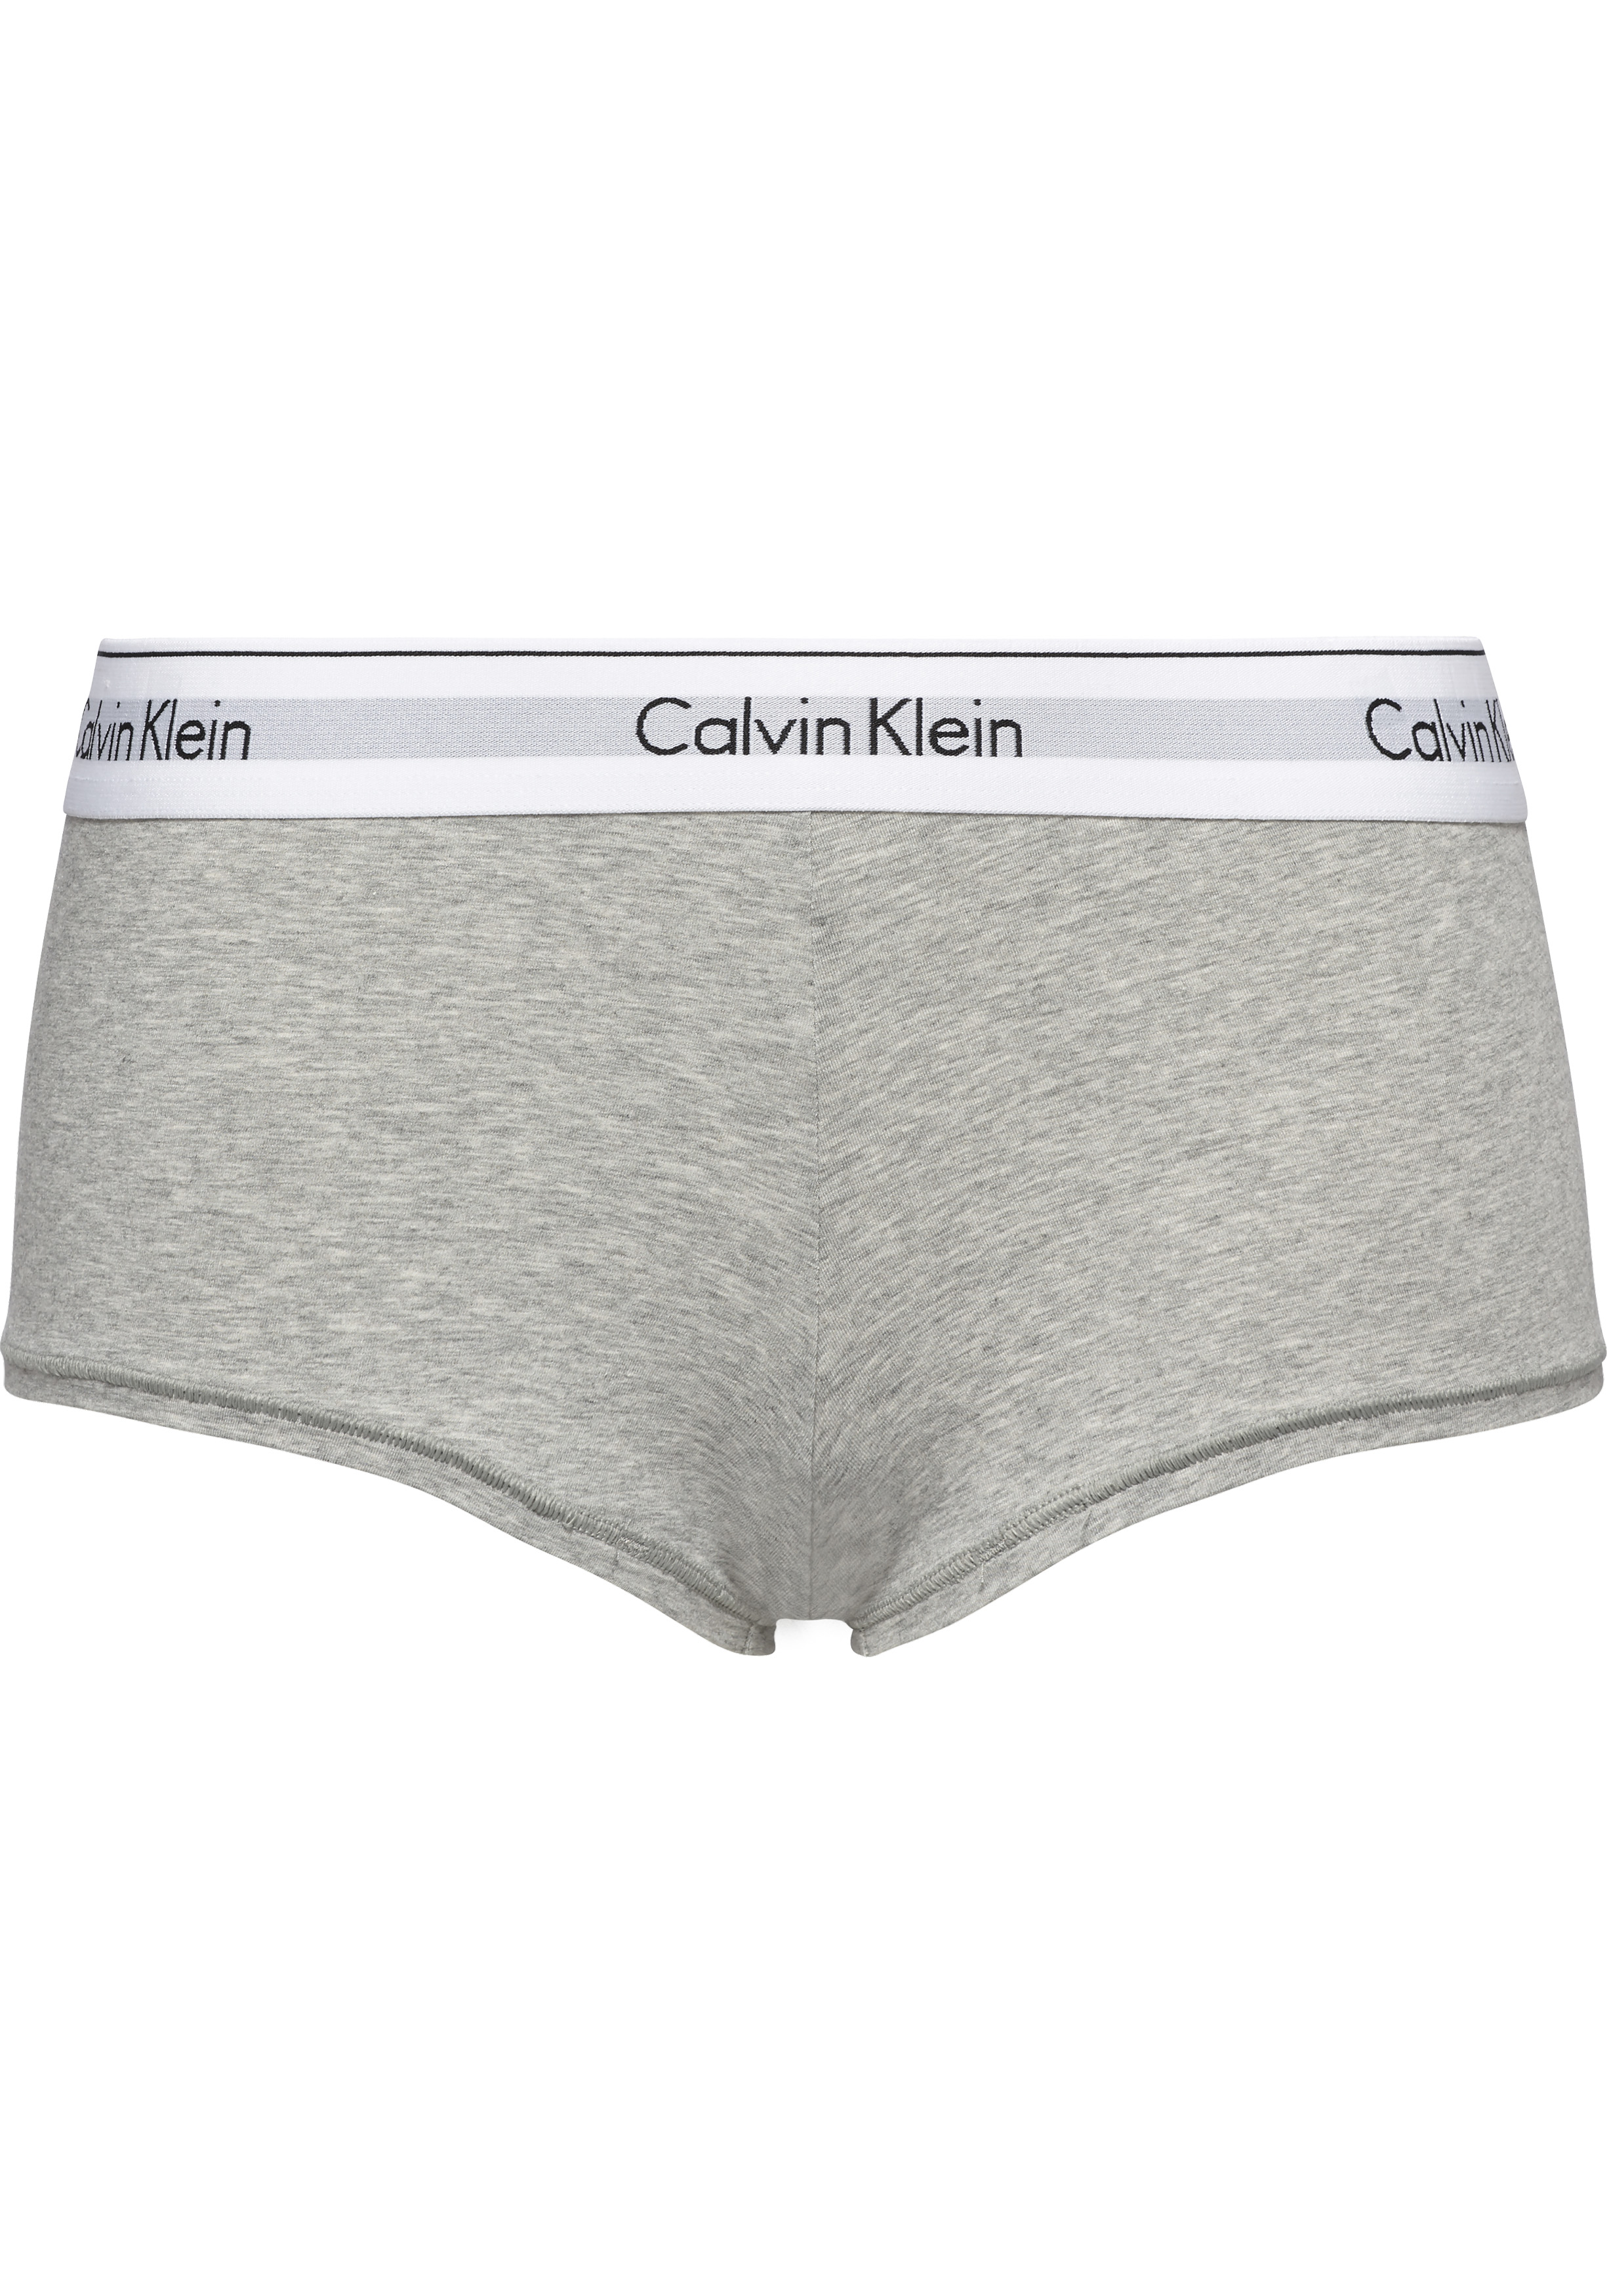 barrière teugels Vertrouwen Calvin Klein dames Modern Cotton hipster slip, boyshort, grijs - Zomer SALE  tot 50% korting